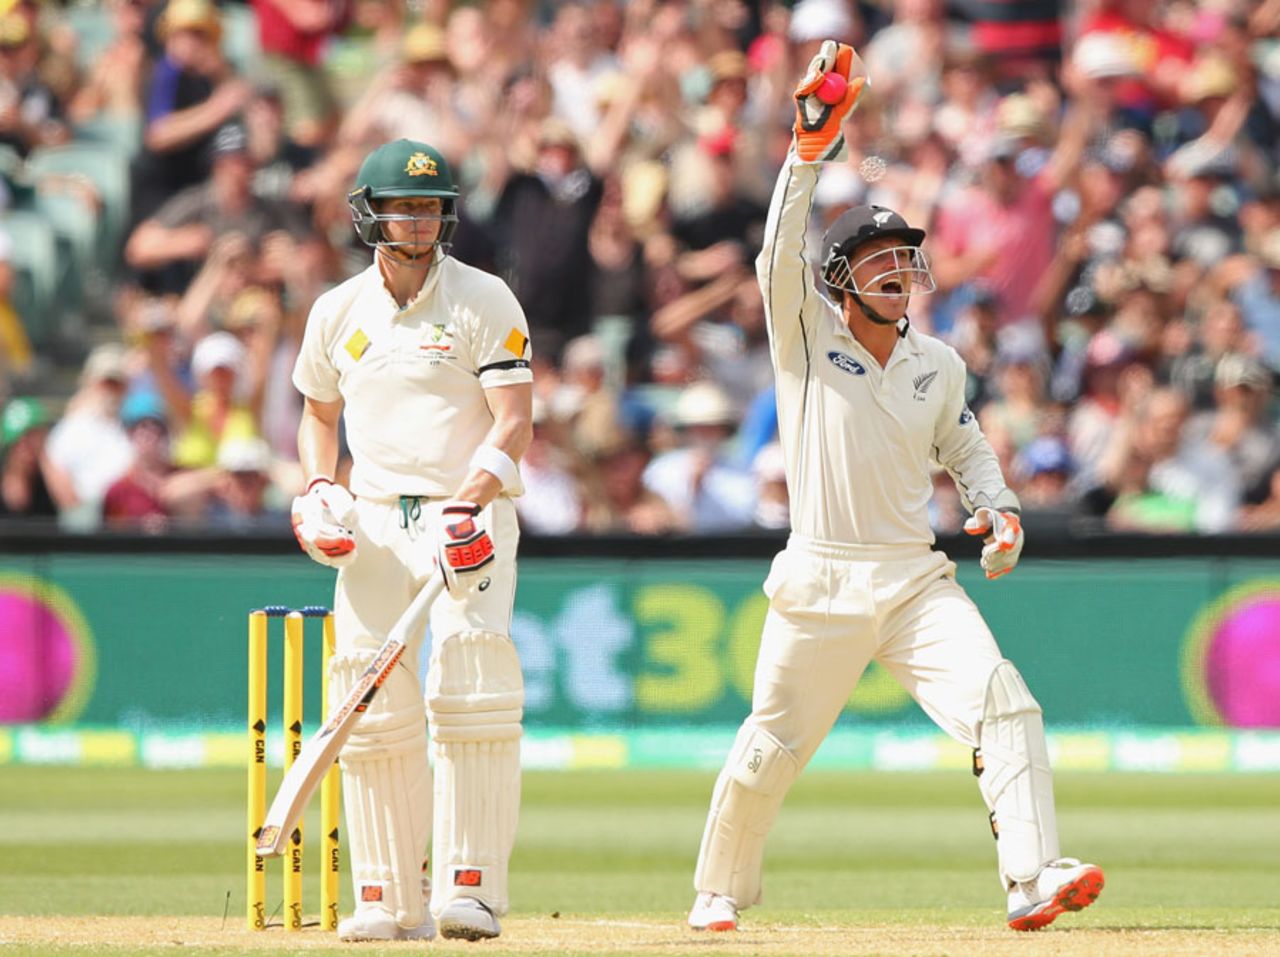 BJ Watling took a sharp catch to dismiss Steven Smith, Australia v New Zealand, 3rd Test, Adelaide, 2nd day, November 28, 2015